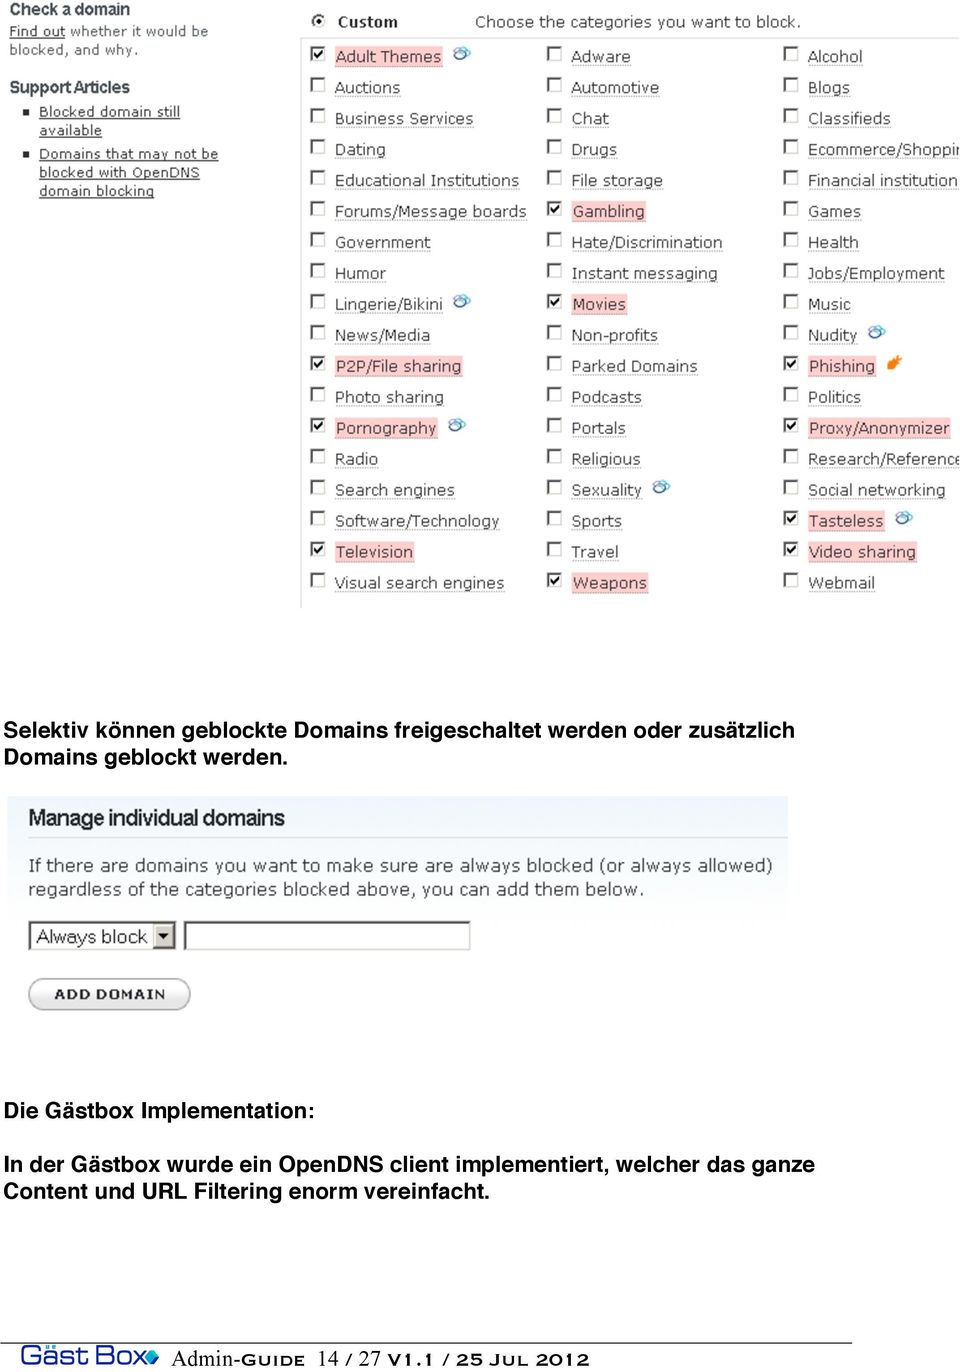 Die Gästbox Implementation: In der Gästbox wurde ein OpenDNS client